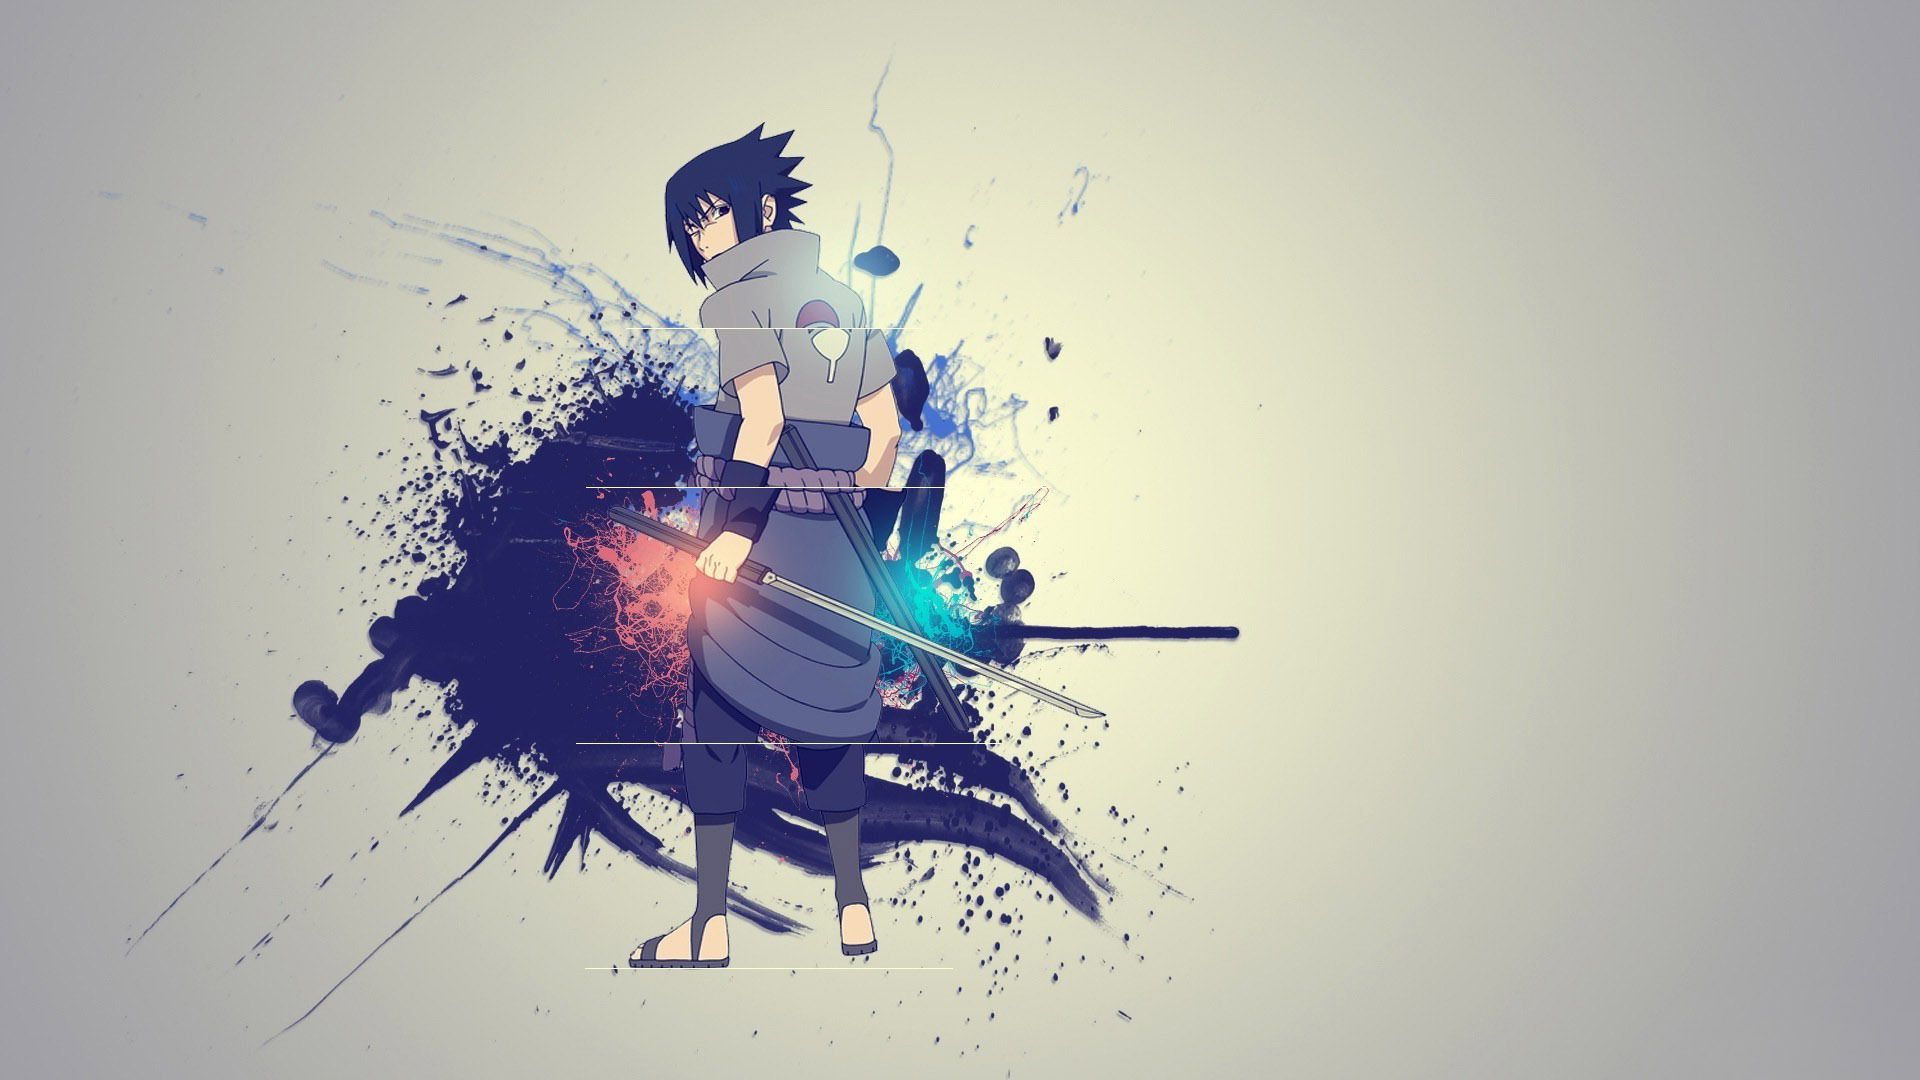 Sasuke Desktop Background. Sasuke